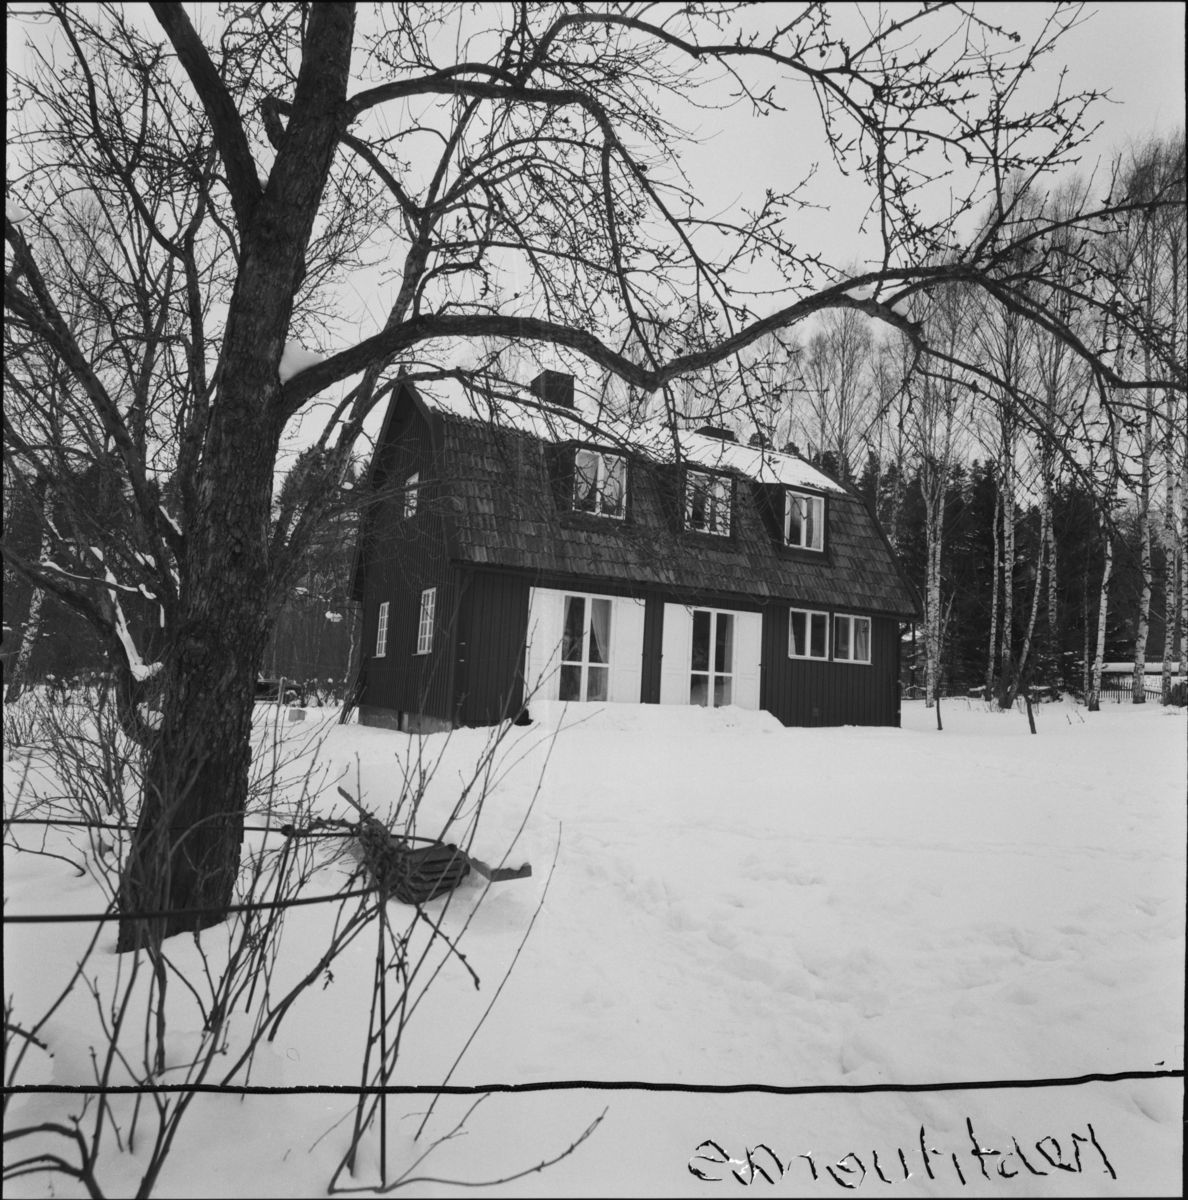 villa Ahlgren
Exteriör, trävilla i snölandskap.